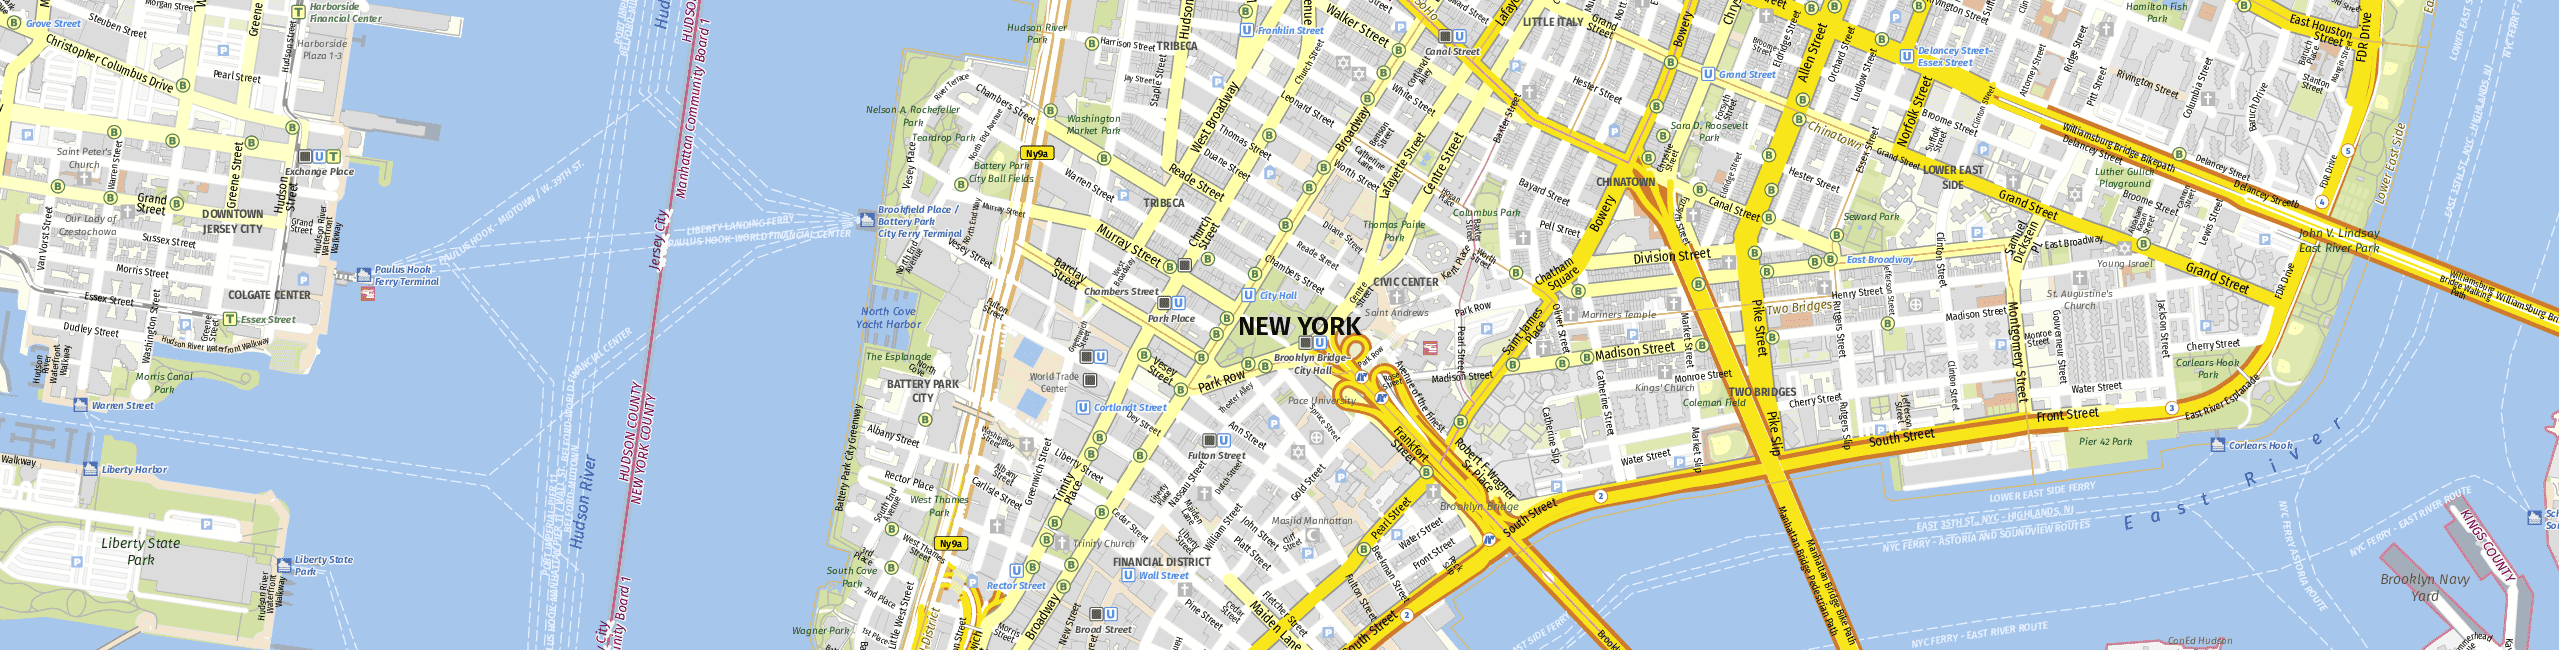 Stadtplan New York zum Downloaden.